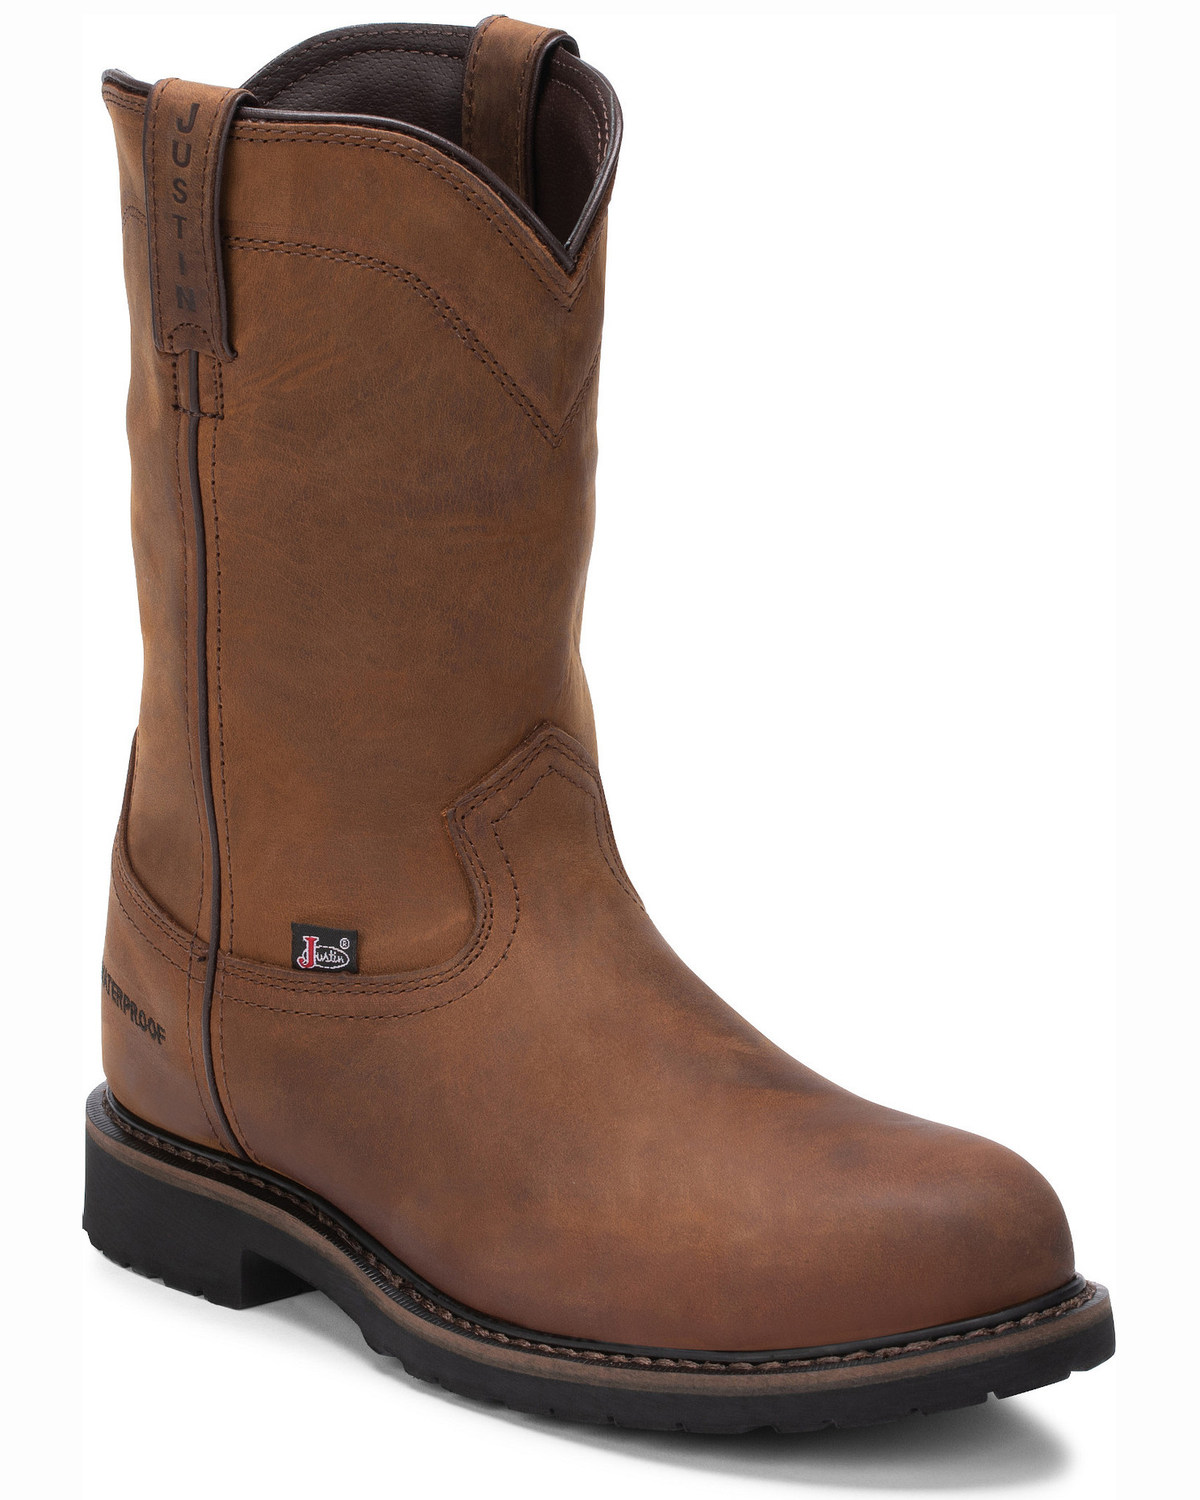 Justin Men's Wyoming Waterproof Western Work Boots - Steel Toe